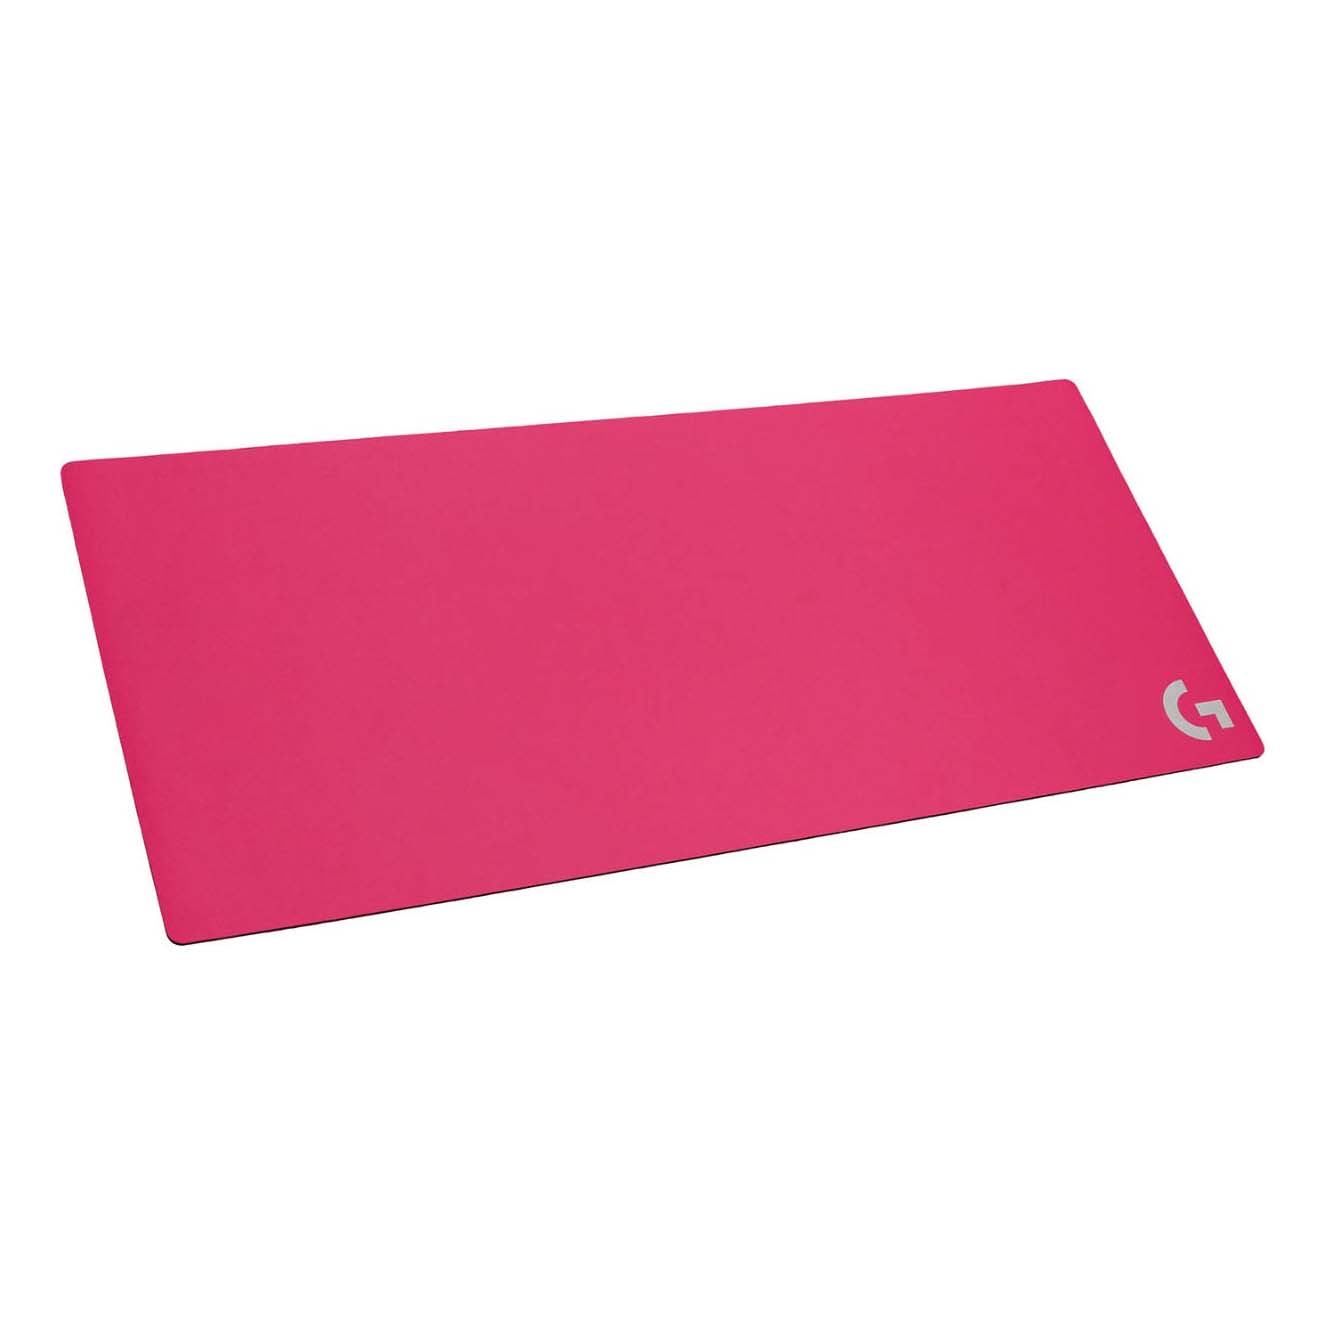 Napier afskaffe fornærme Игровой коврик для мыши Logitech G840 XL, розовый – заказать из-за рубежа в  «CDEK.Shopping»